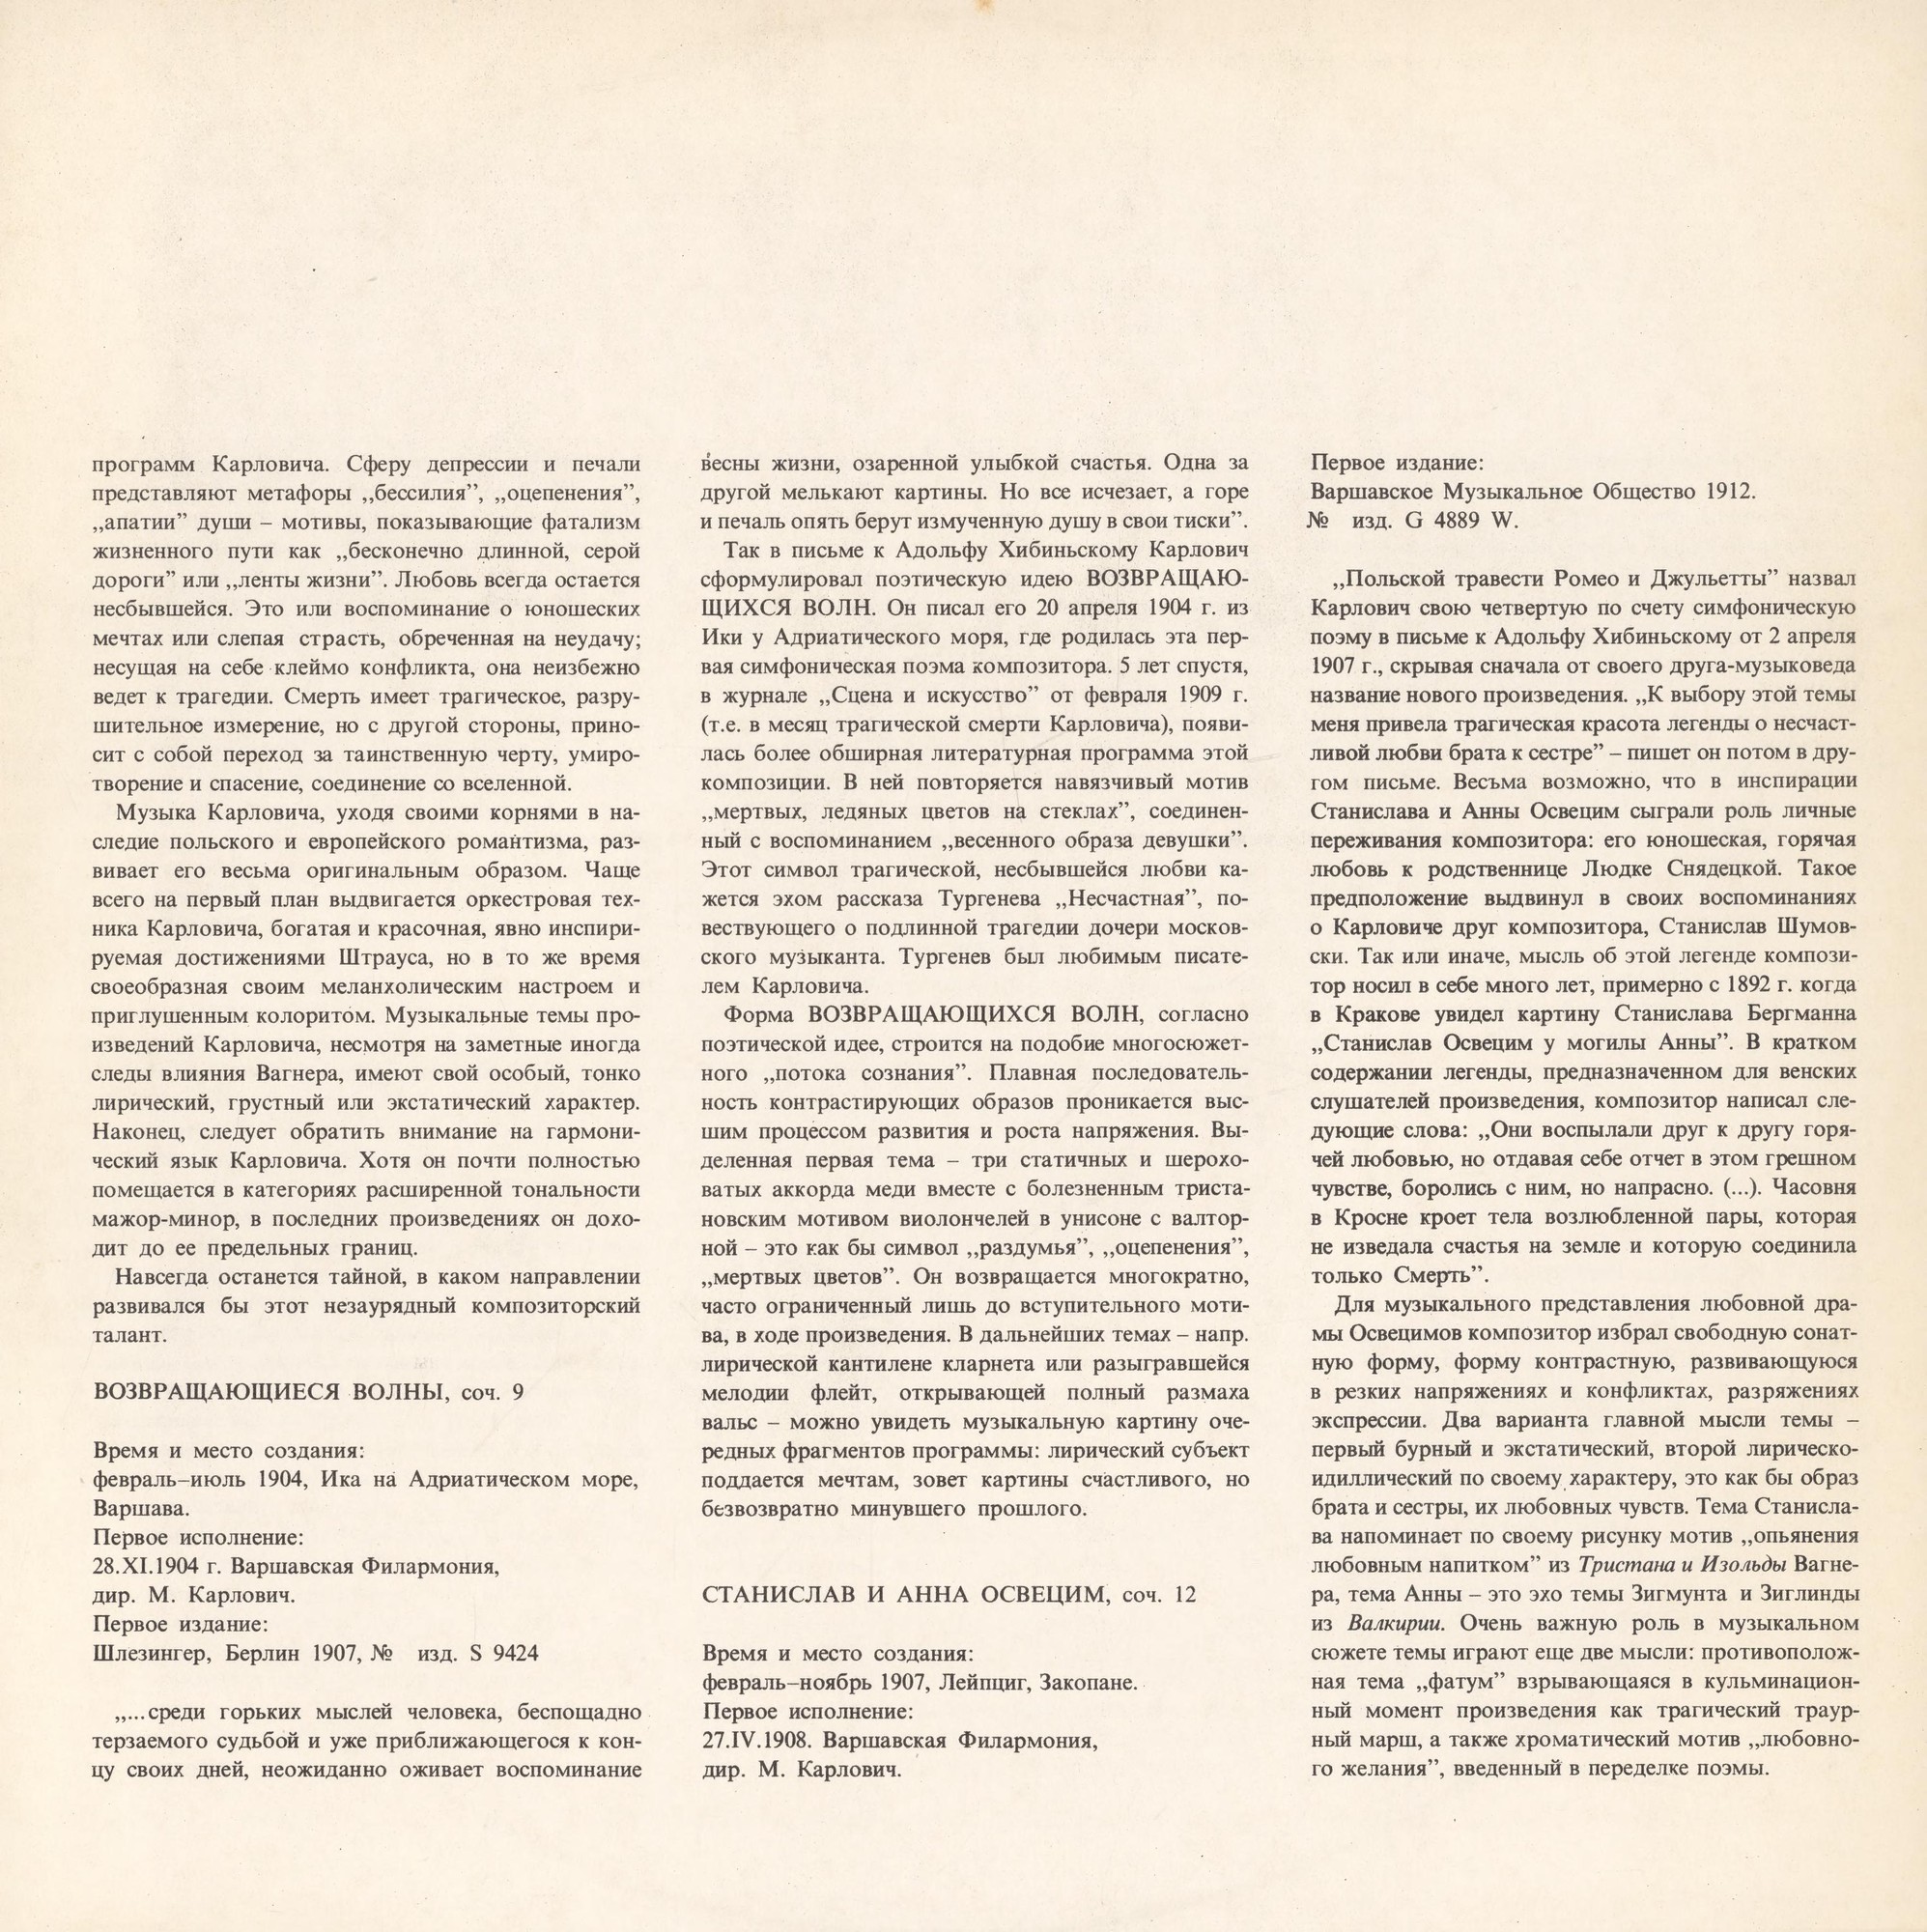 Jerzy Salwarowski  / Karłowicz - Poematy Symfoniczne (1) [по заказу польской фирмы WIFON, LP 063]